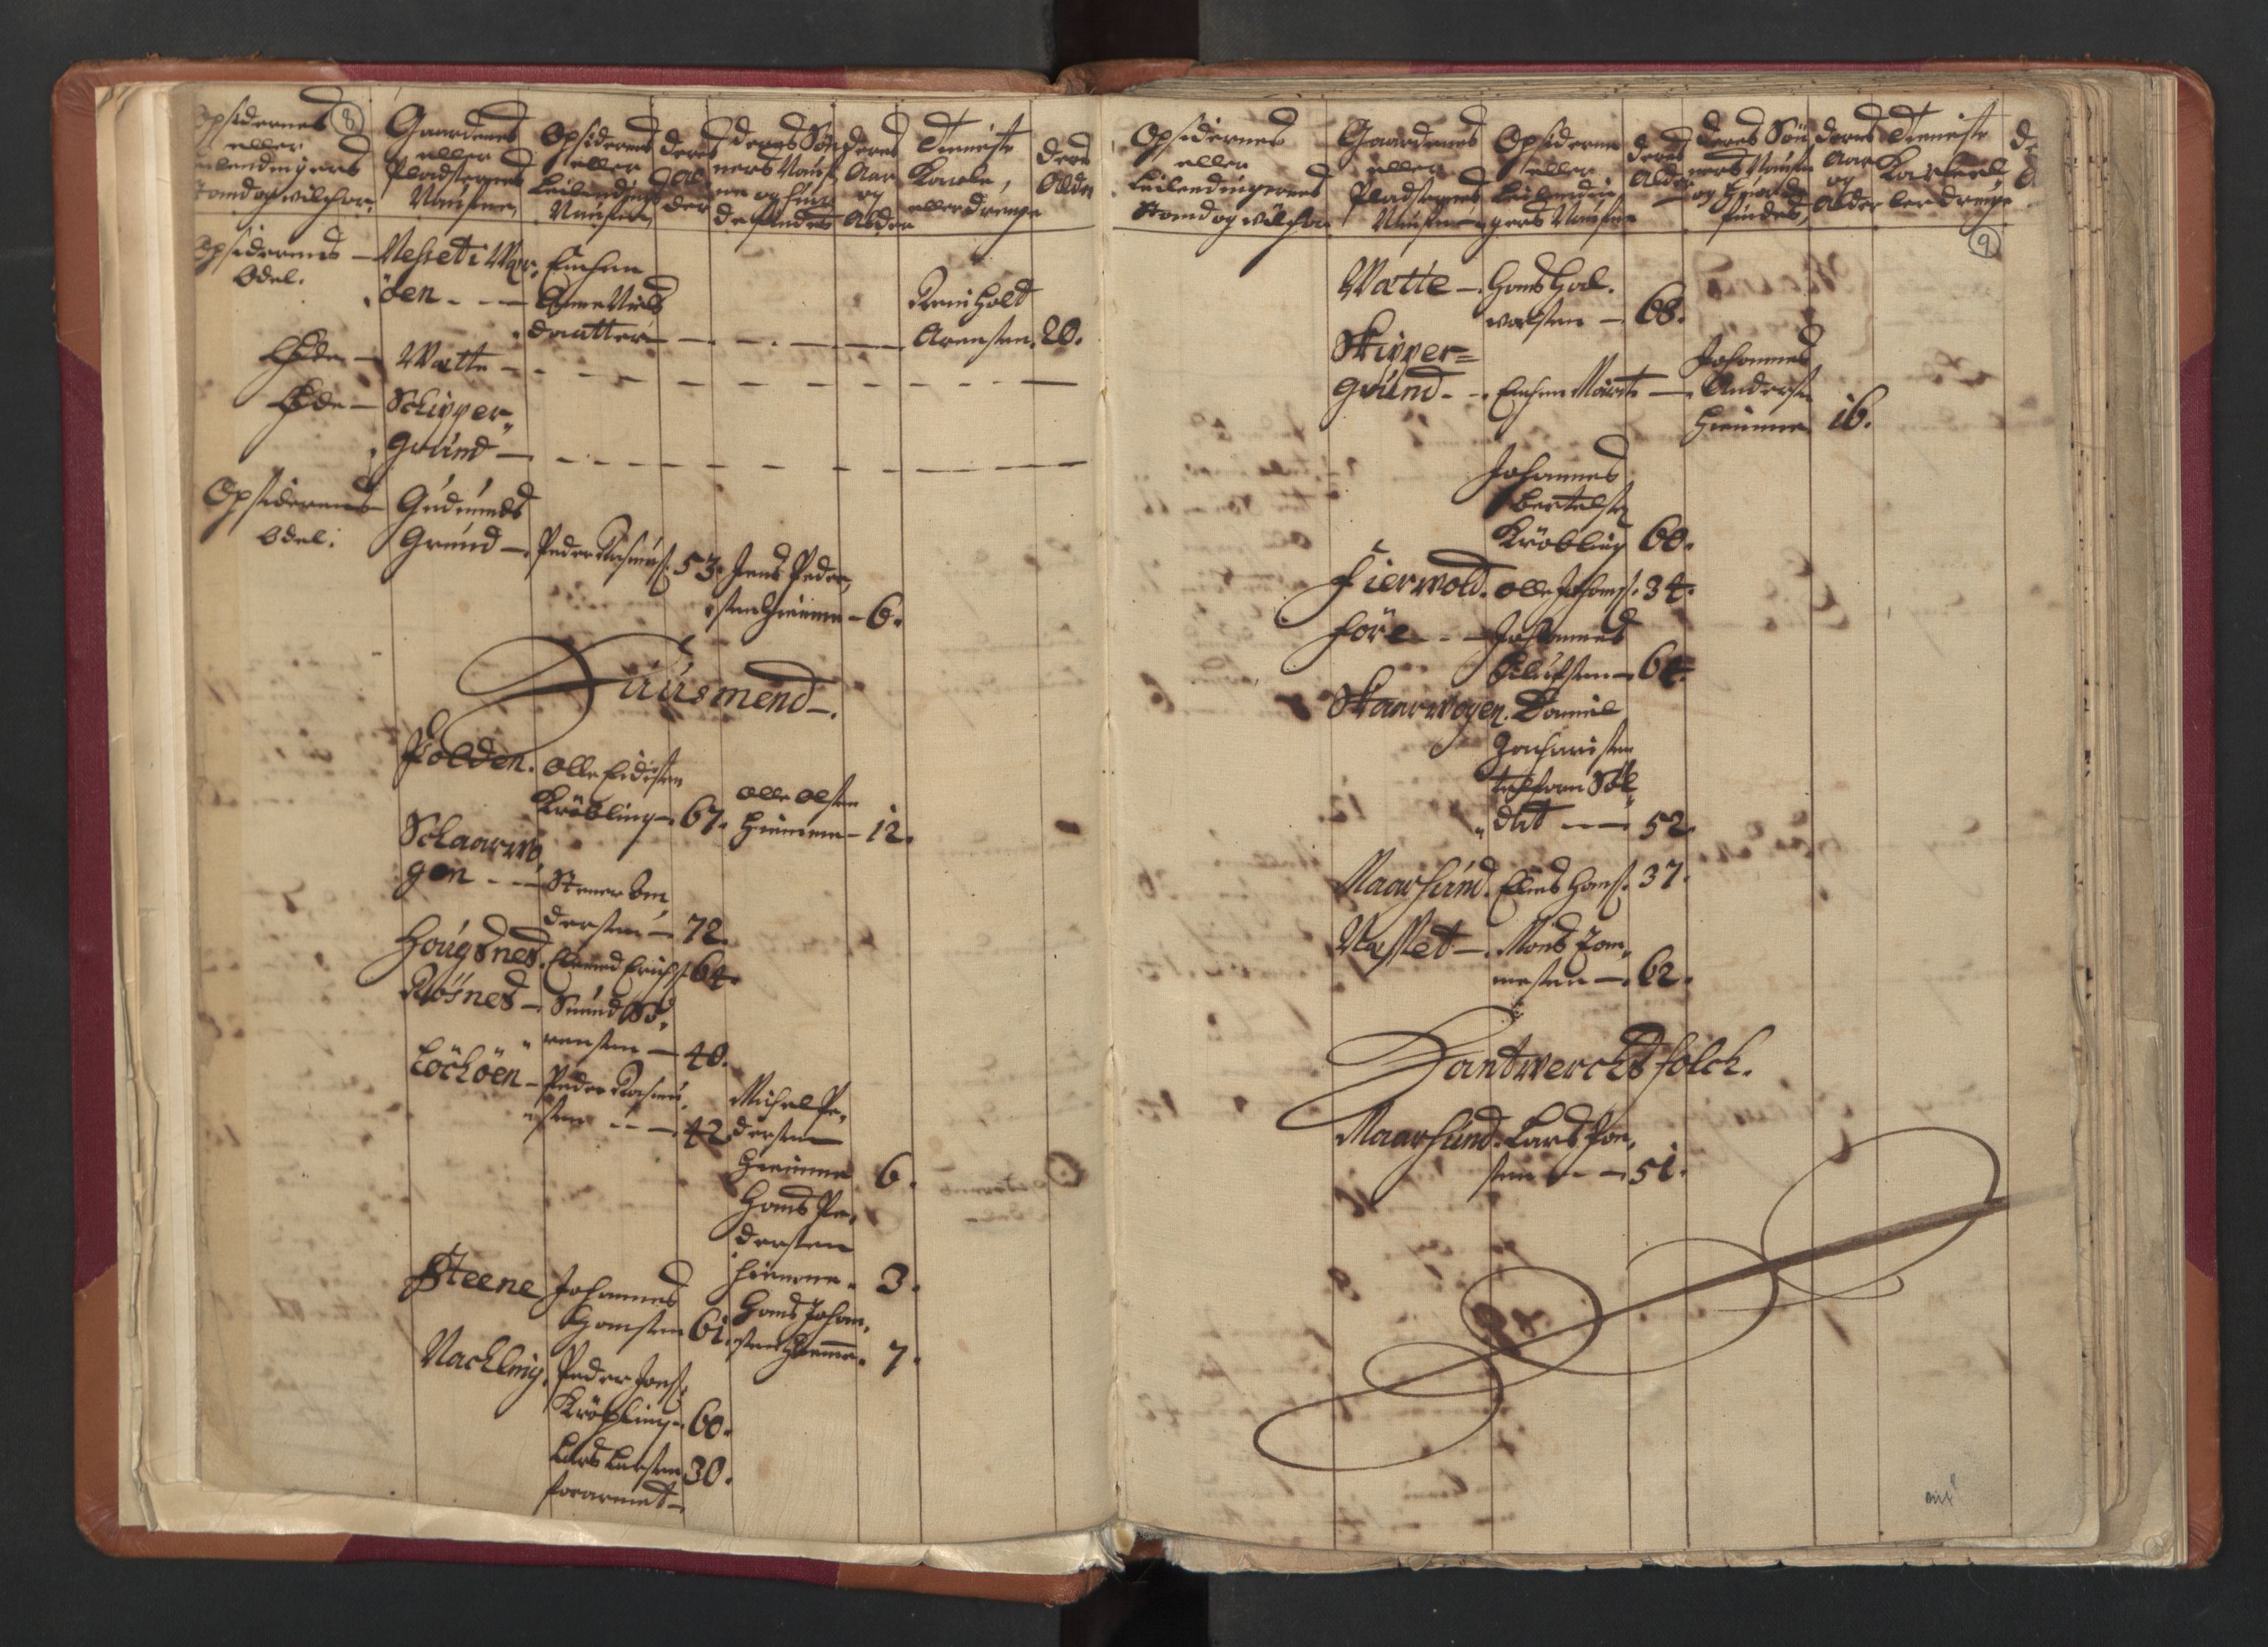 RA, Census (manntall) 1701, no. 18: Vesterålen, Andenes and Lofoten fogderi, 1701, p. 8-9